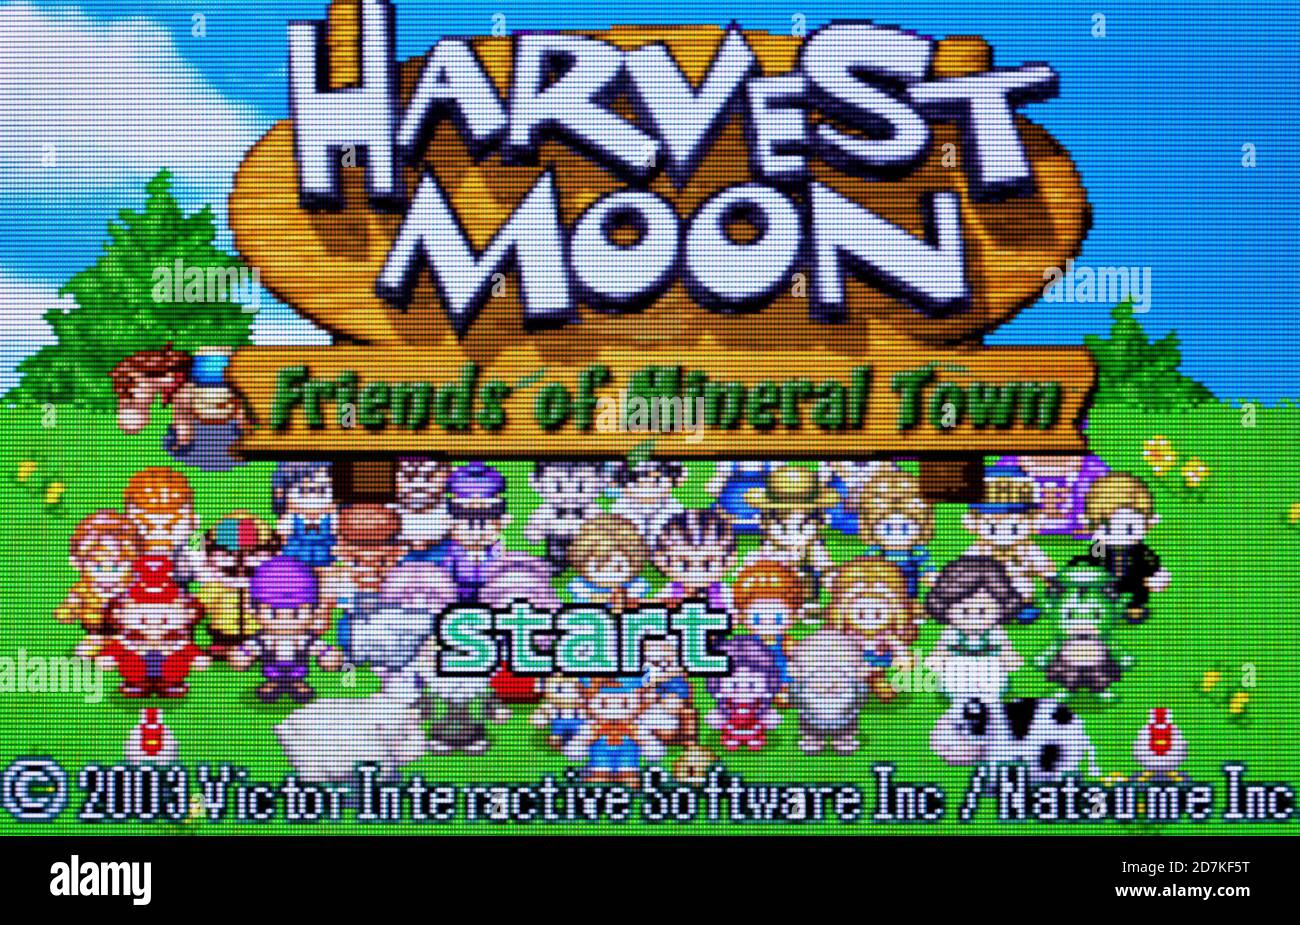 Harvest Moon - amici di Mineral Town - Nintendo Game Gioco di ragazzi Advance - solo per uso editoriale Foto Stock